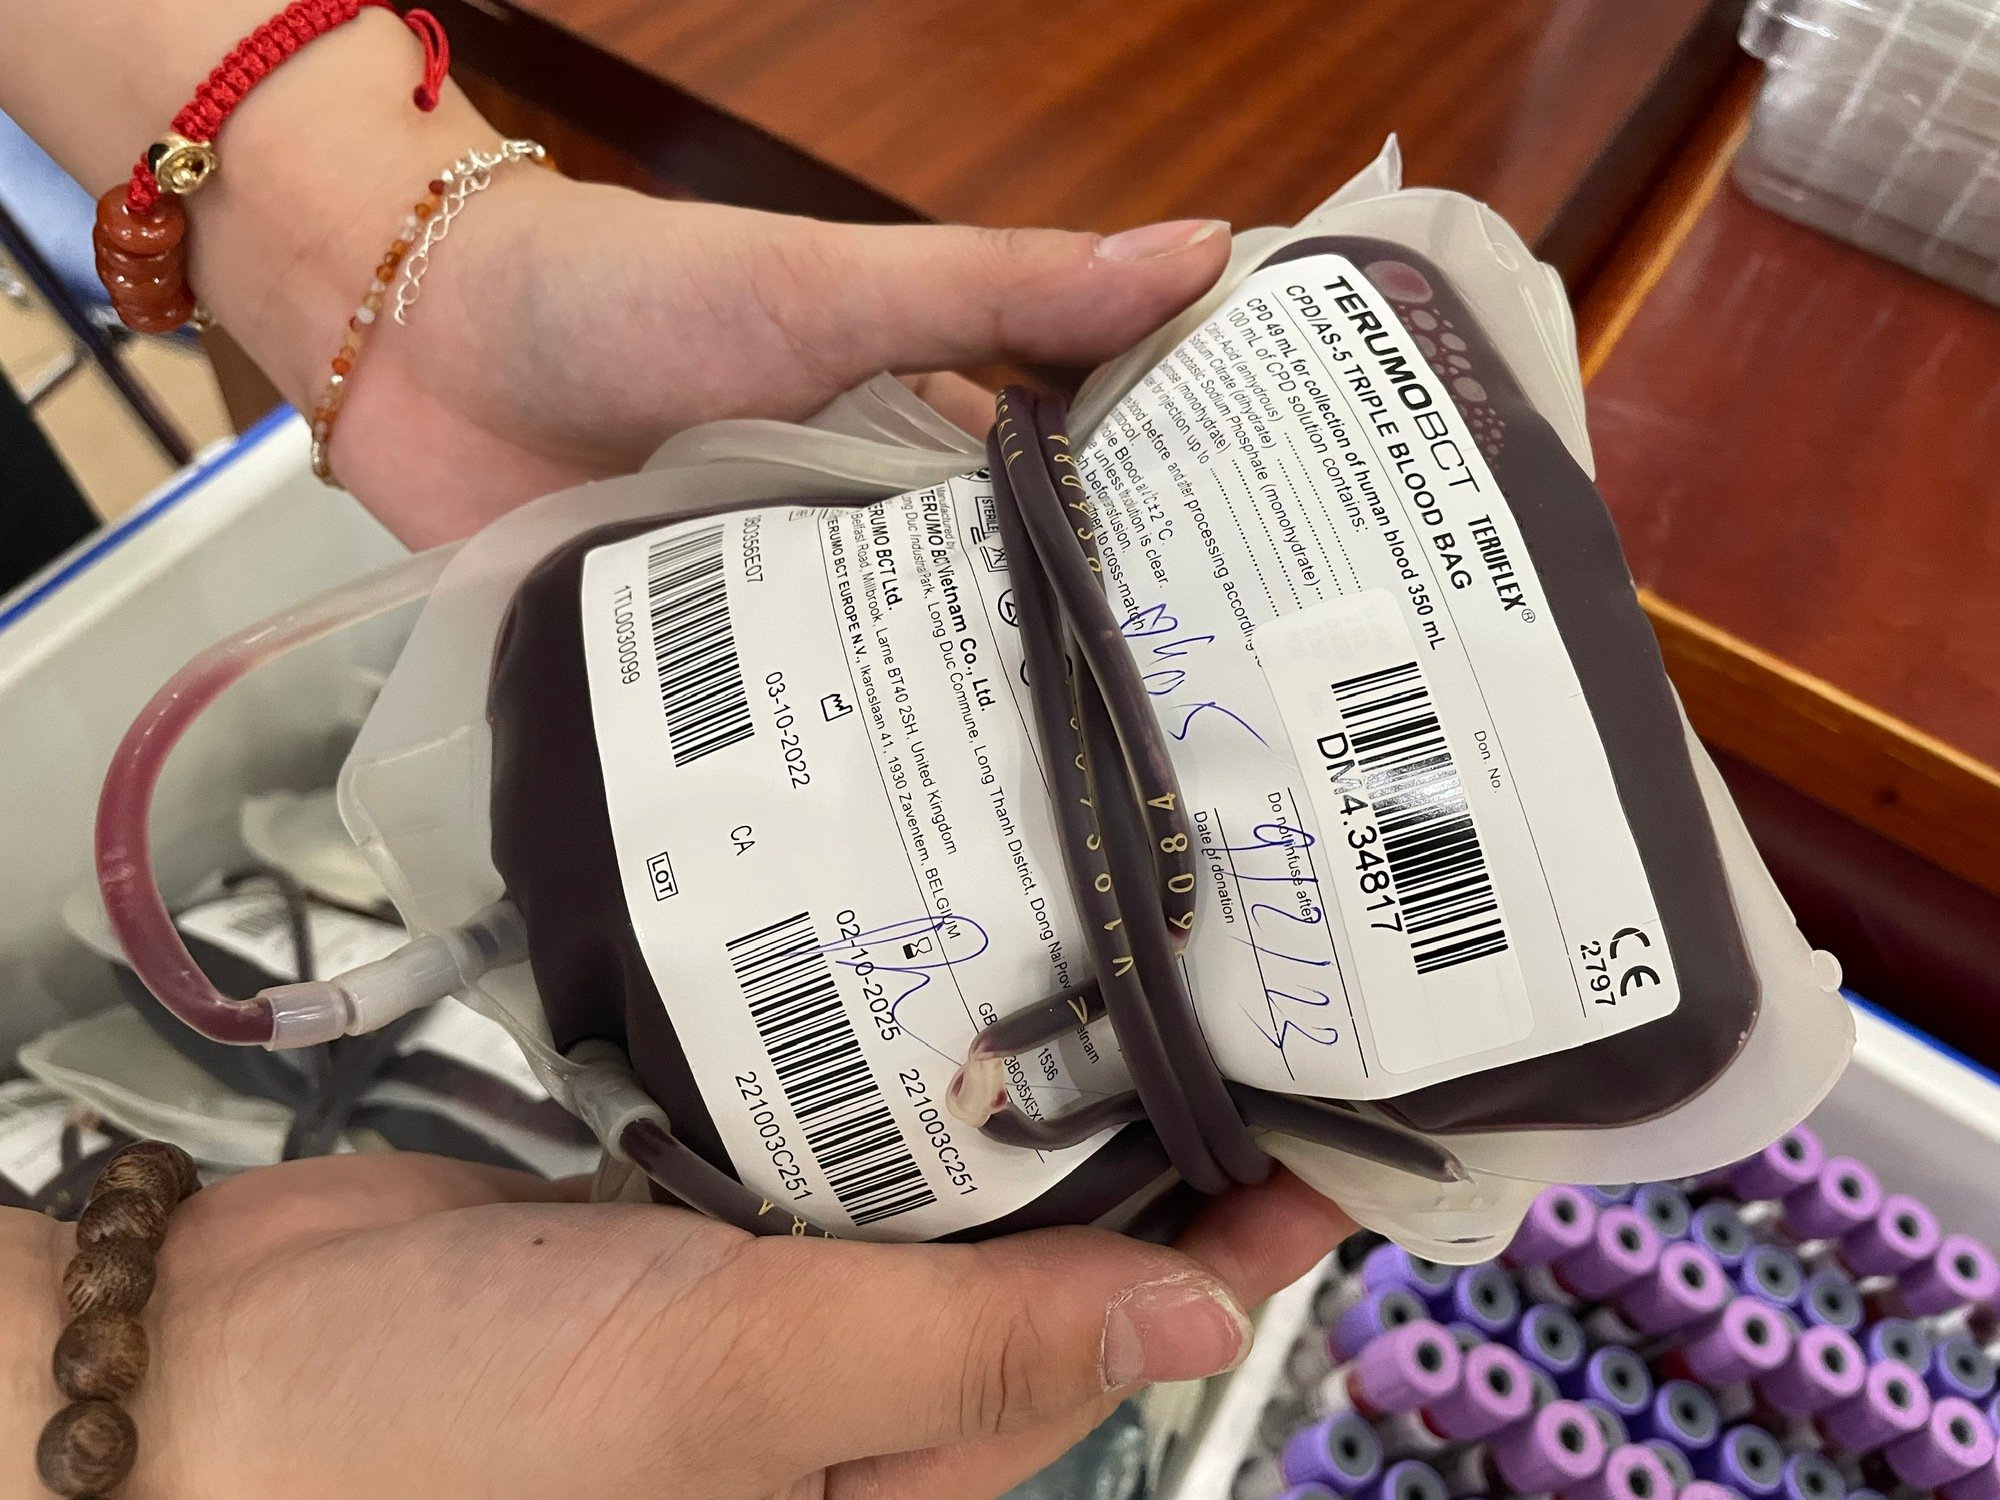  Đơn vị máu thu được từ Ngày hội hiến máu tại Bệnh viện Phụ sản Trung ương.